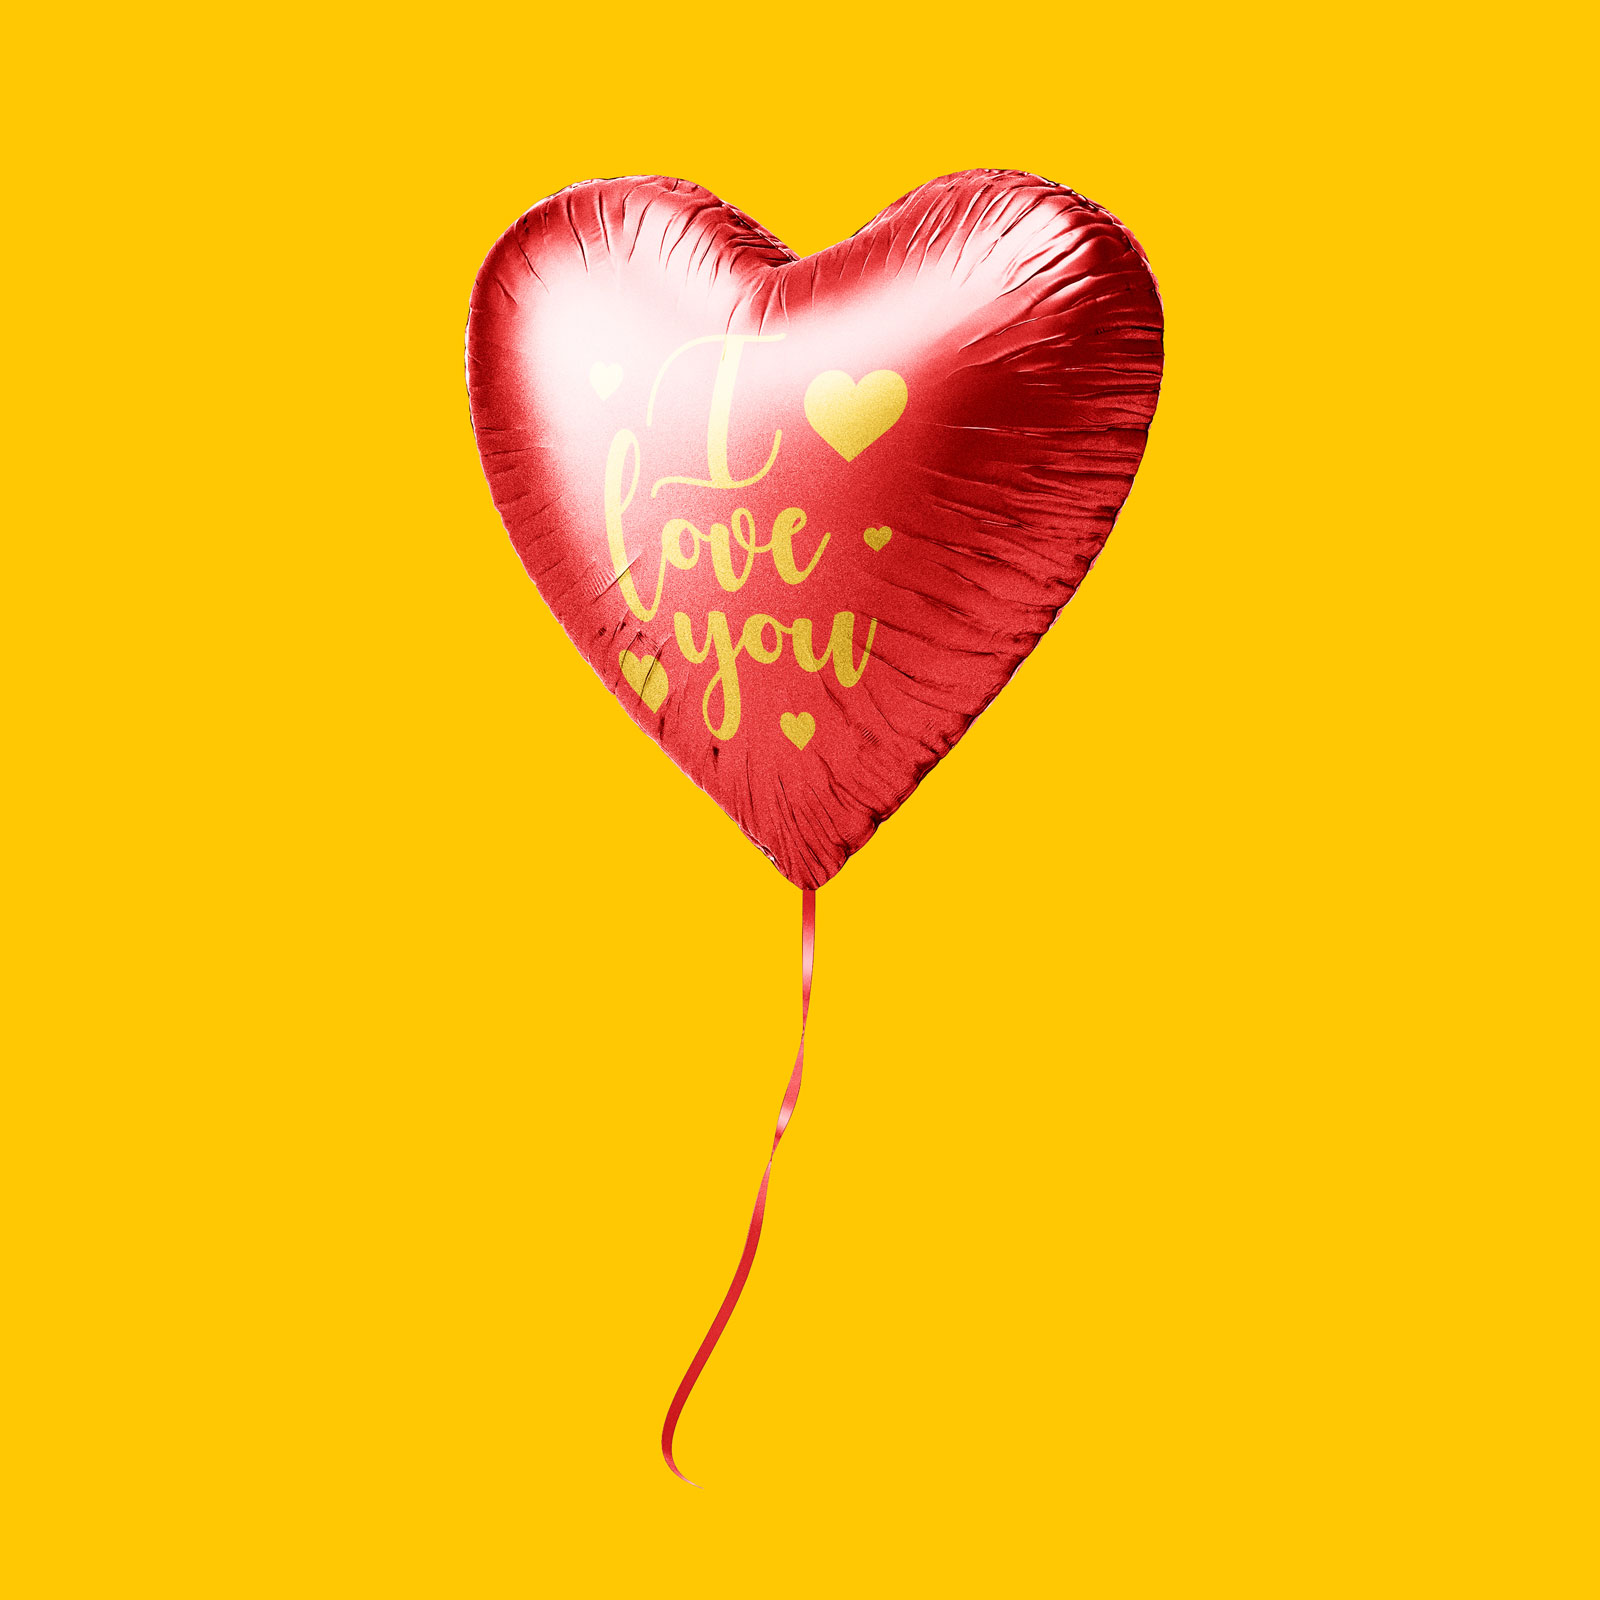 Ballon de cœur set pour la Saint-Valentin 2020